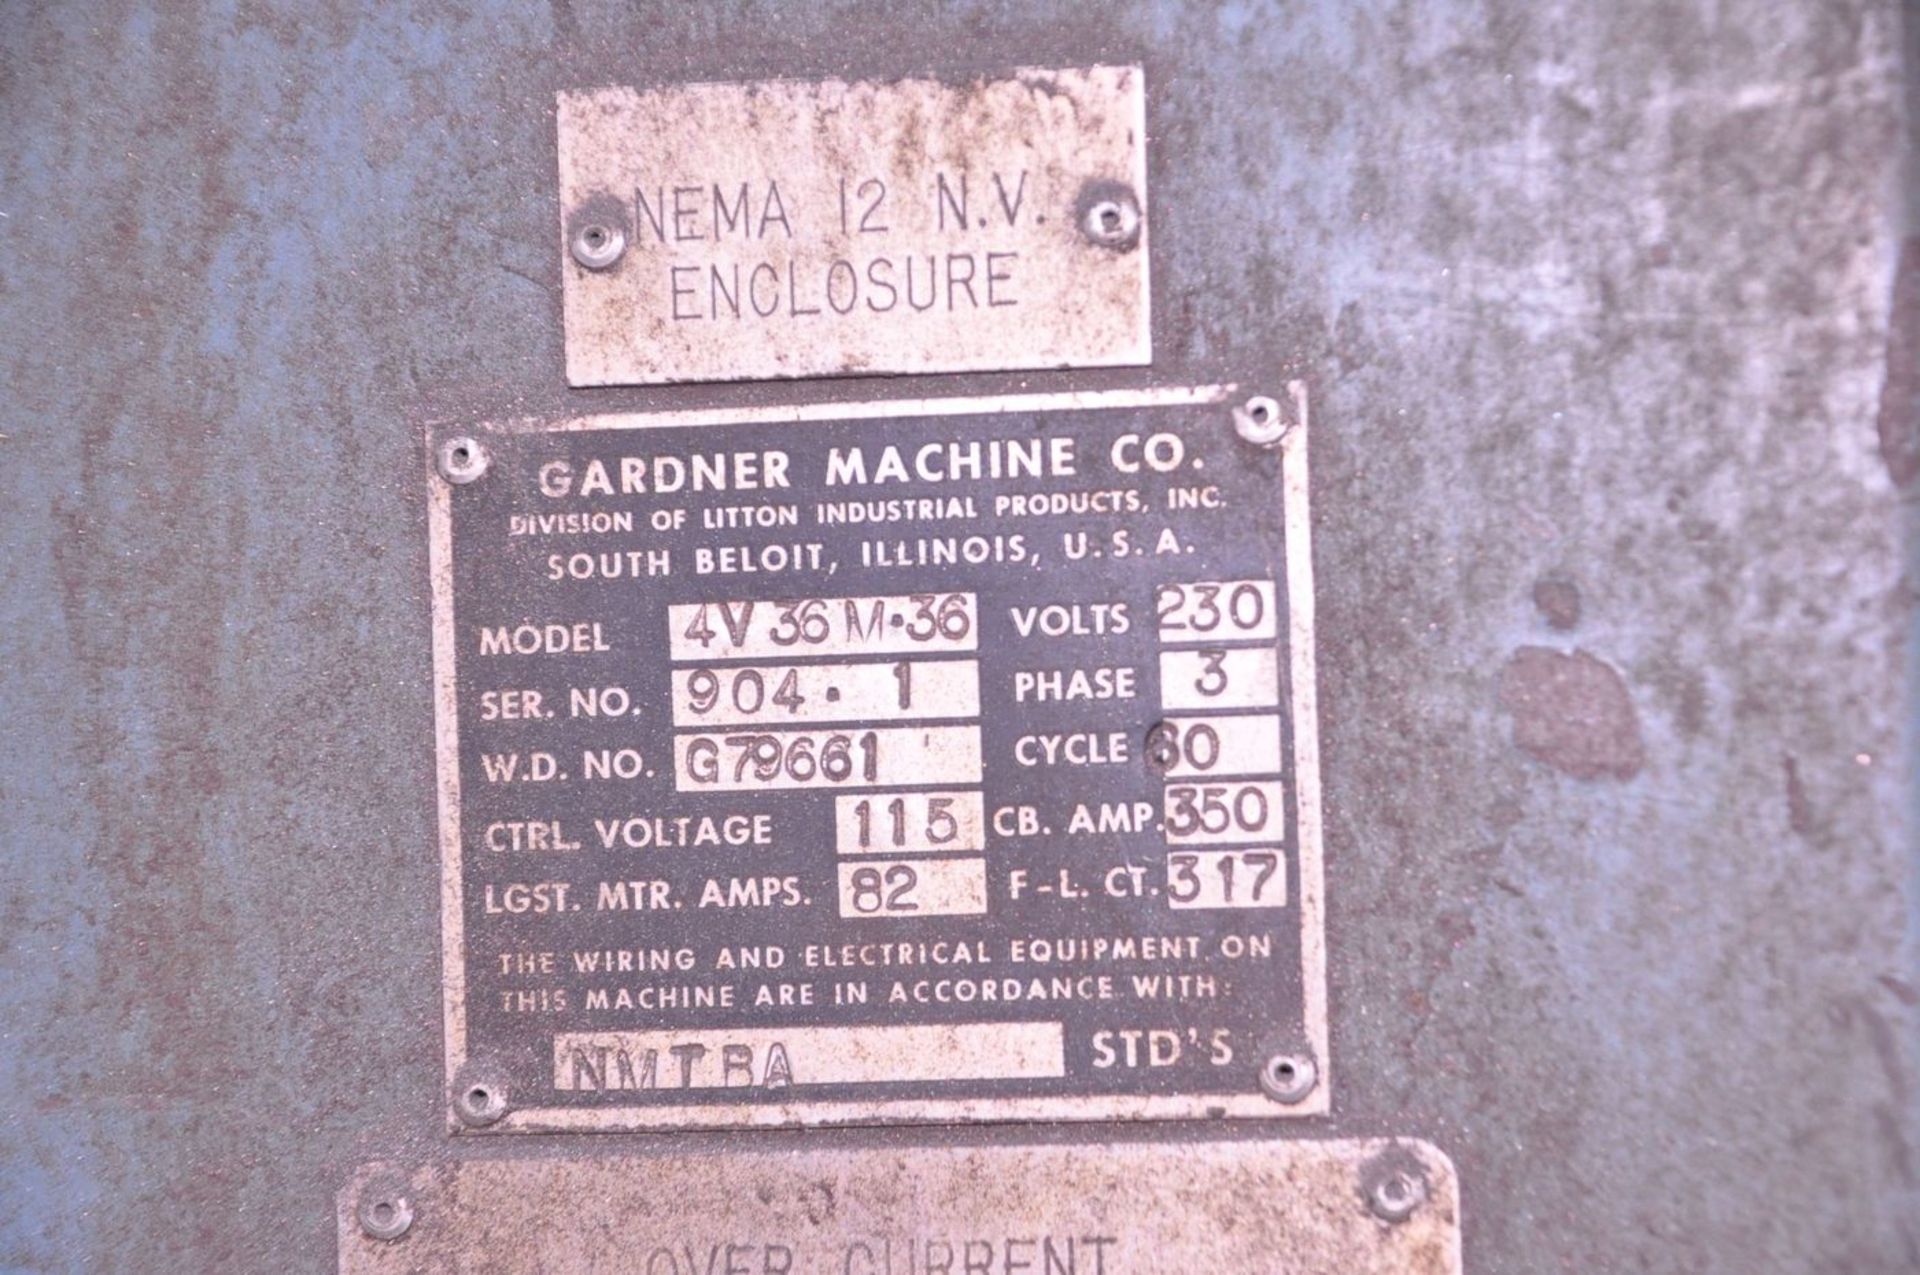 Gardner 36 in. Model 4V36M-36 Tandem Spring Grinder, S/N: 904-1; with Dresser, 25-HP Spindle Motors, - Image 7 of 7